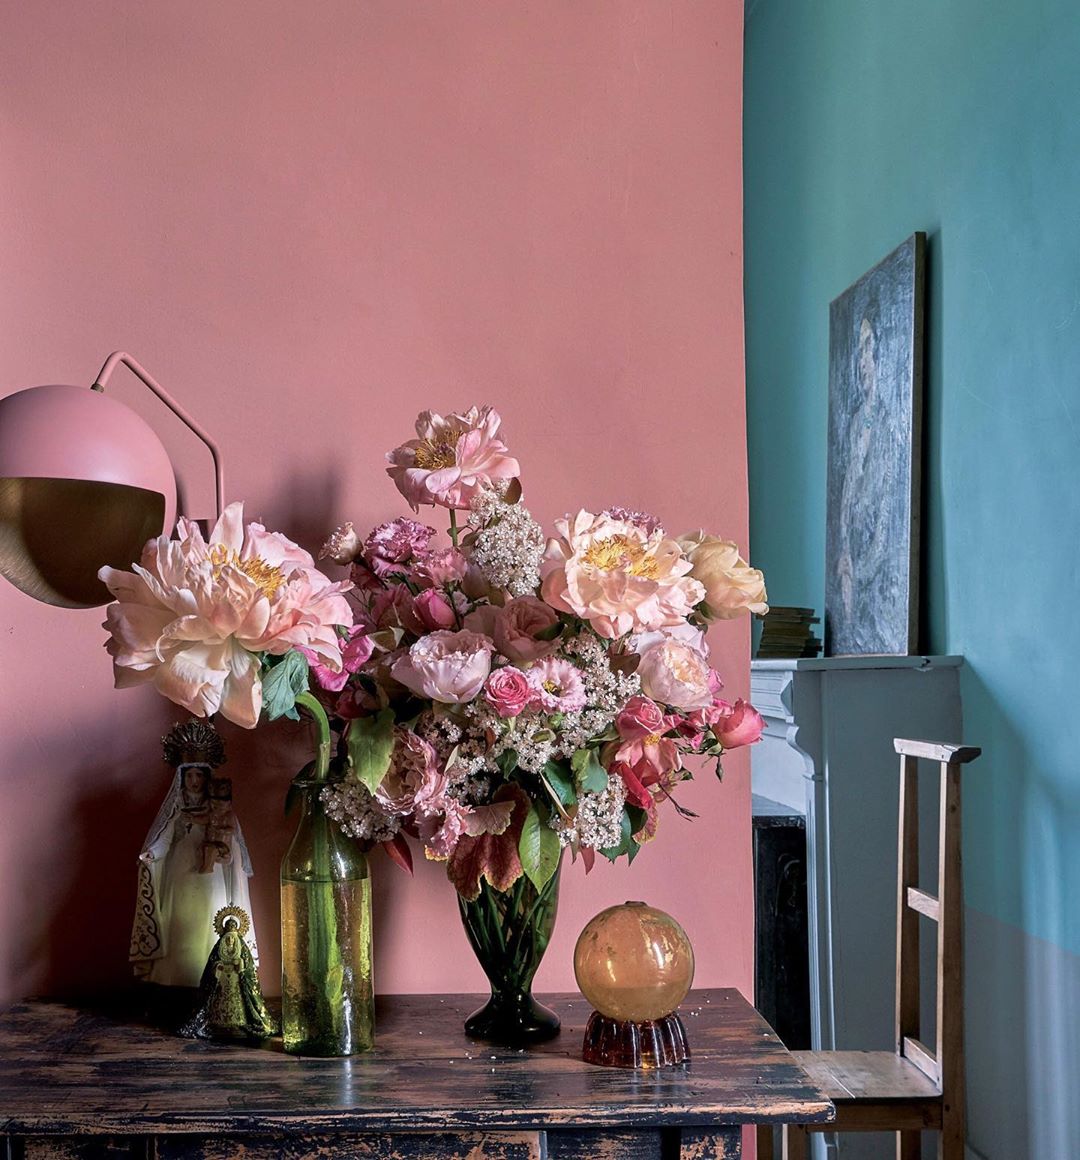 Elledeco ステイホームをきっかけに部屋に花を飾る人も増えたはず エル ジャポン11月号では パリジェンヌの花のある暮らしや インテリアをグレードアッ Magmoe